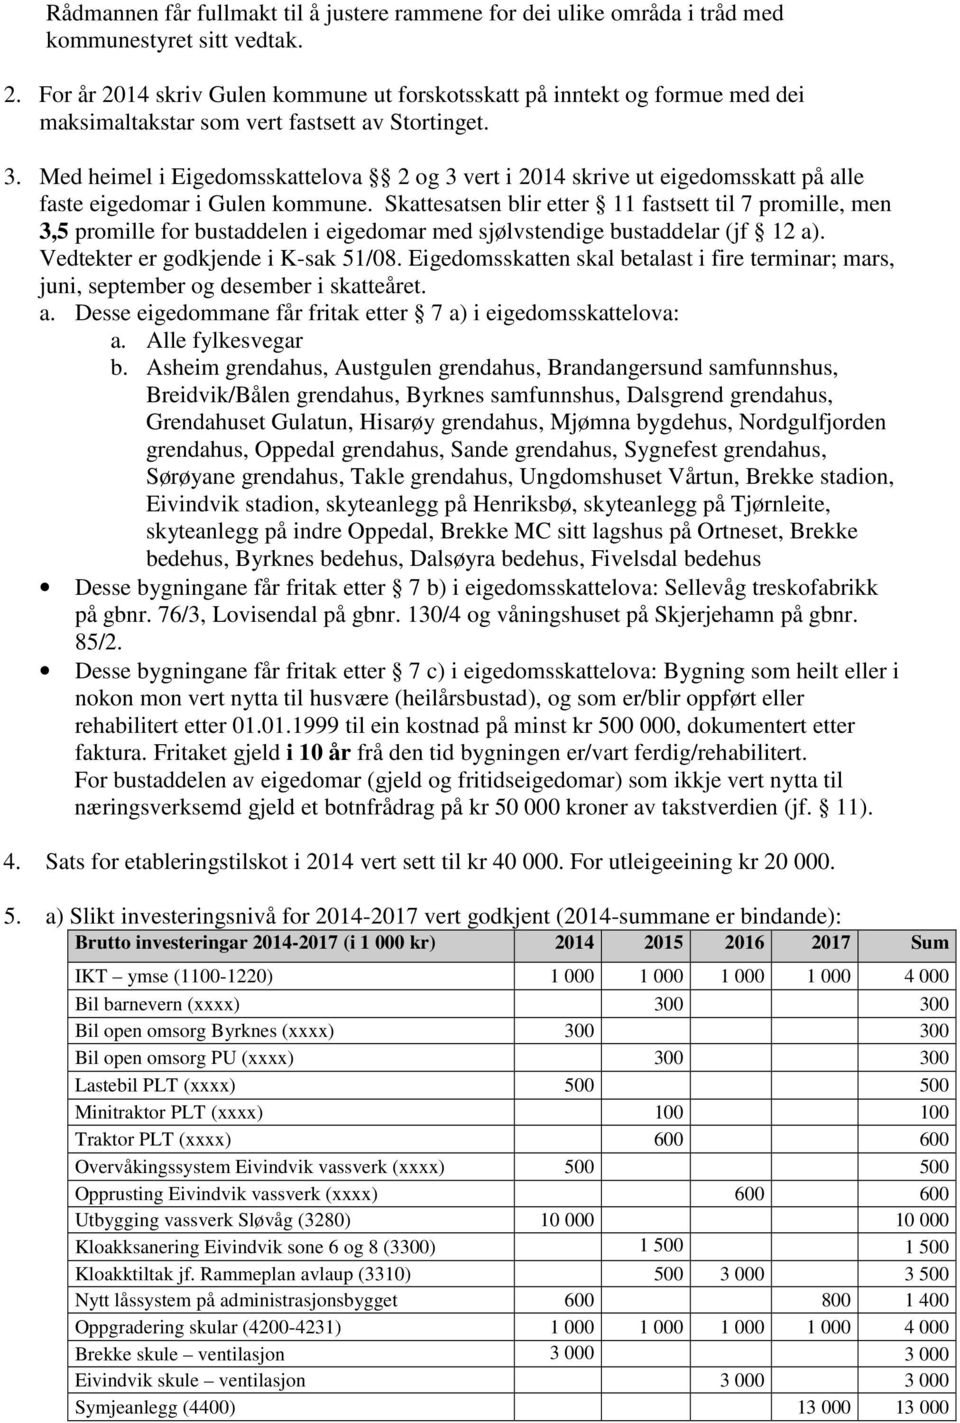 Med heimel i Eigedomsskattelova 2 og 3 vert i 2014 skrive ut eigedomsskatt på alle faste eigedomar i Gulen kommune.